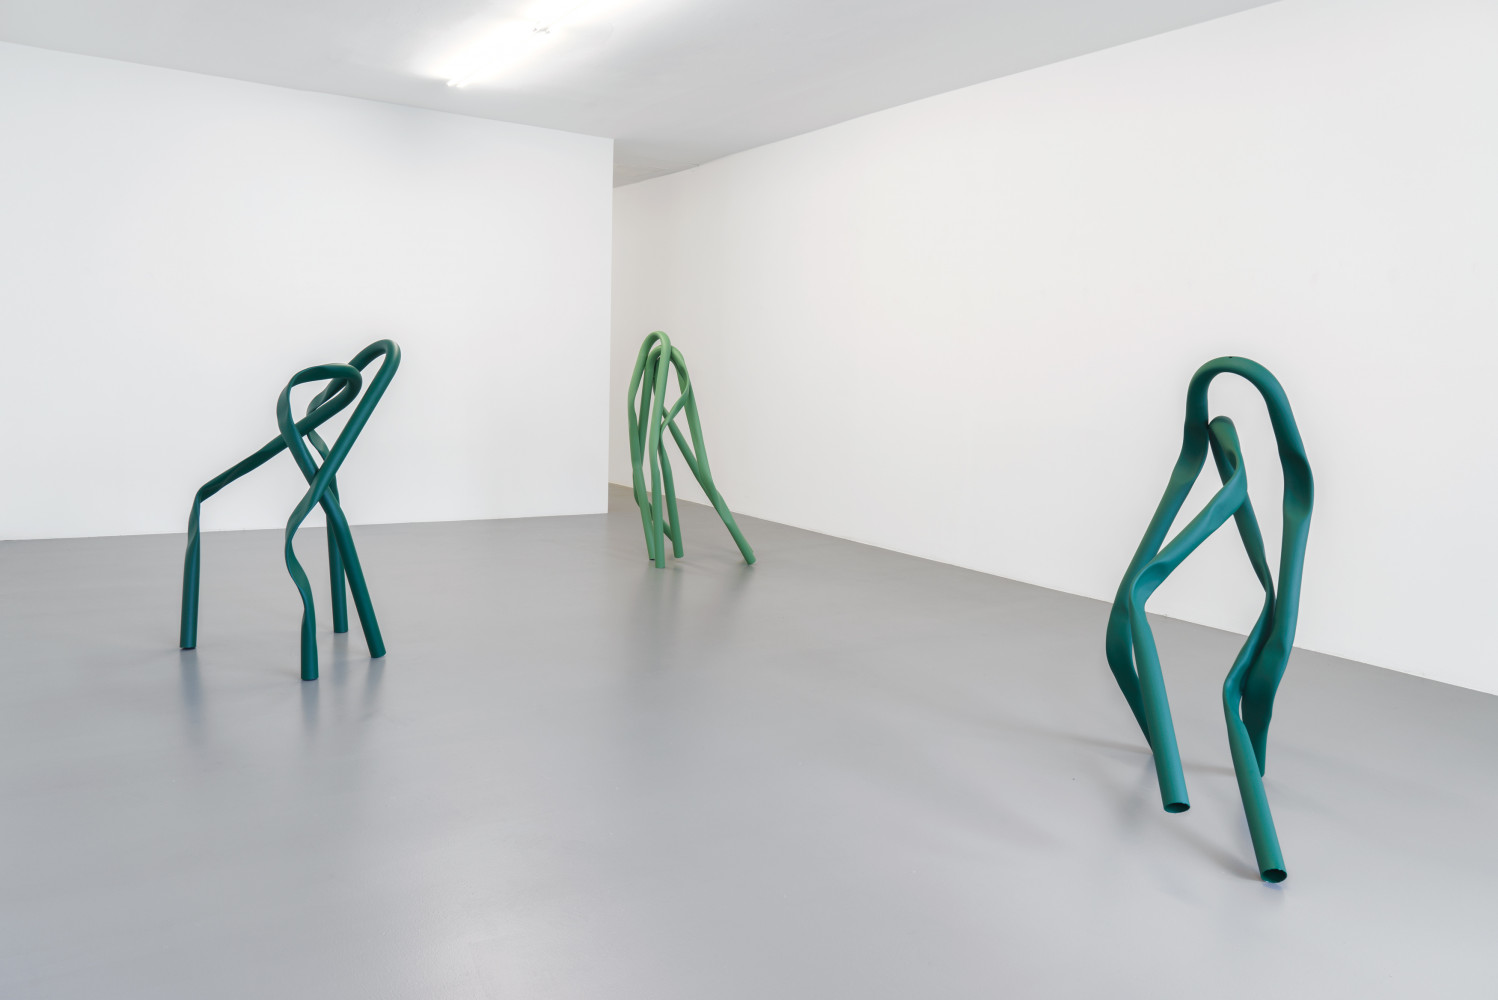 Bettina Pousttchi, ‘Allee’, Installation view, Buchmann Box, 2018